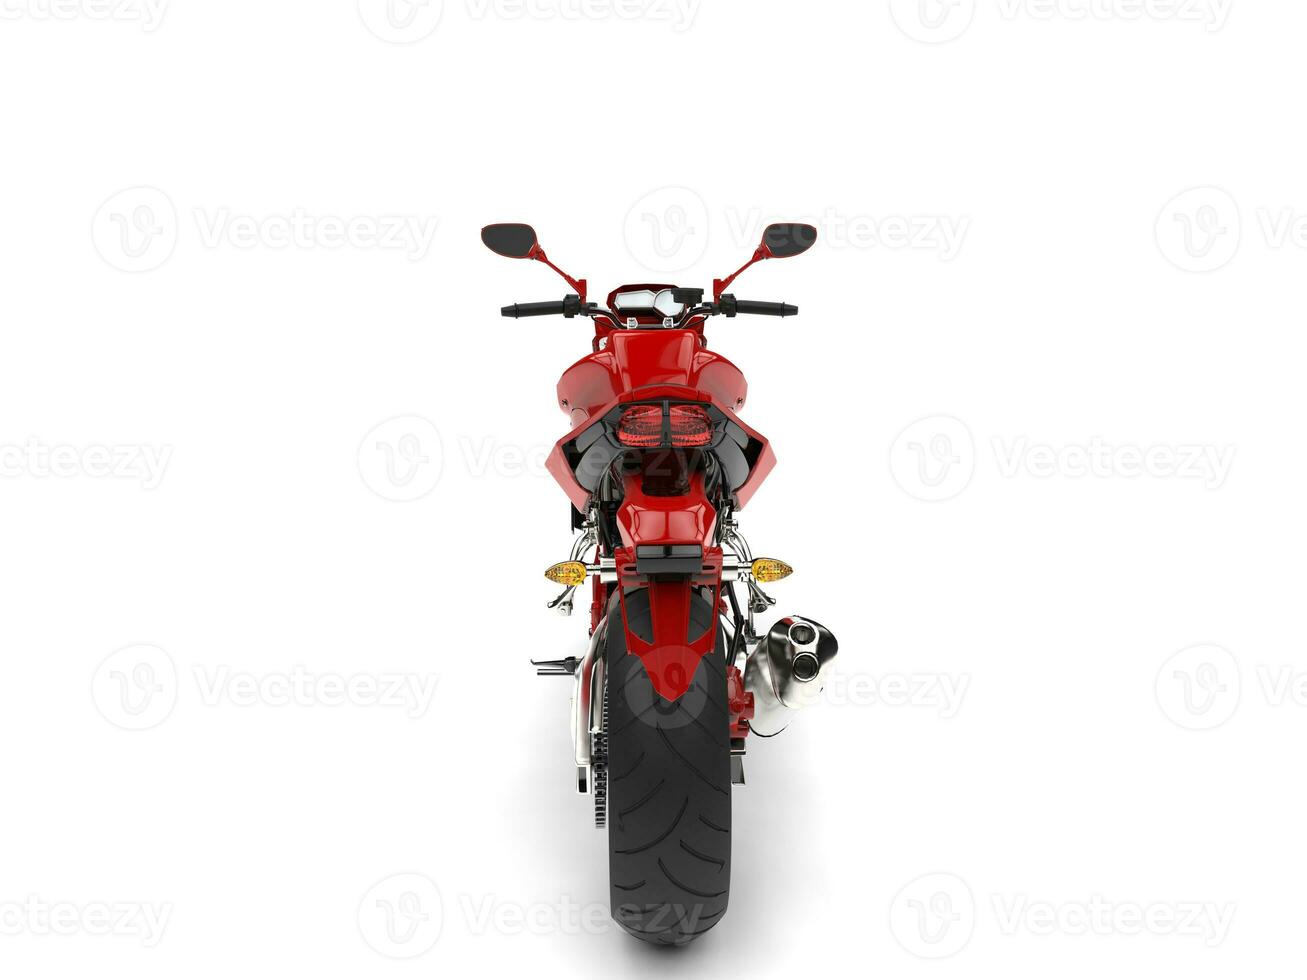 magnifique rouge des sports moto - retour vue photo